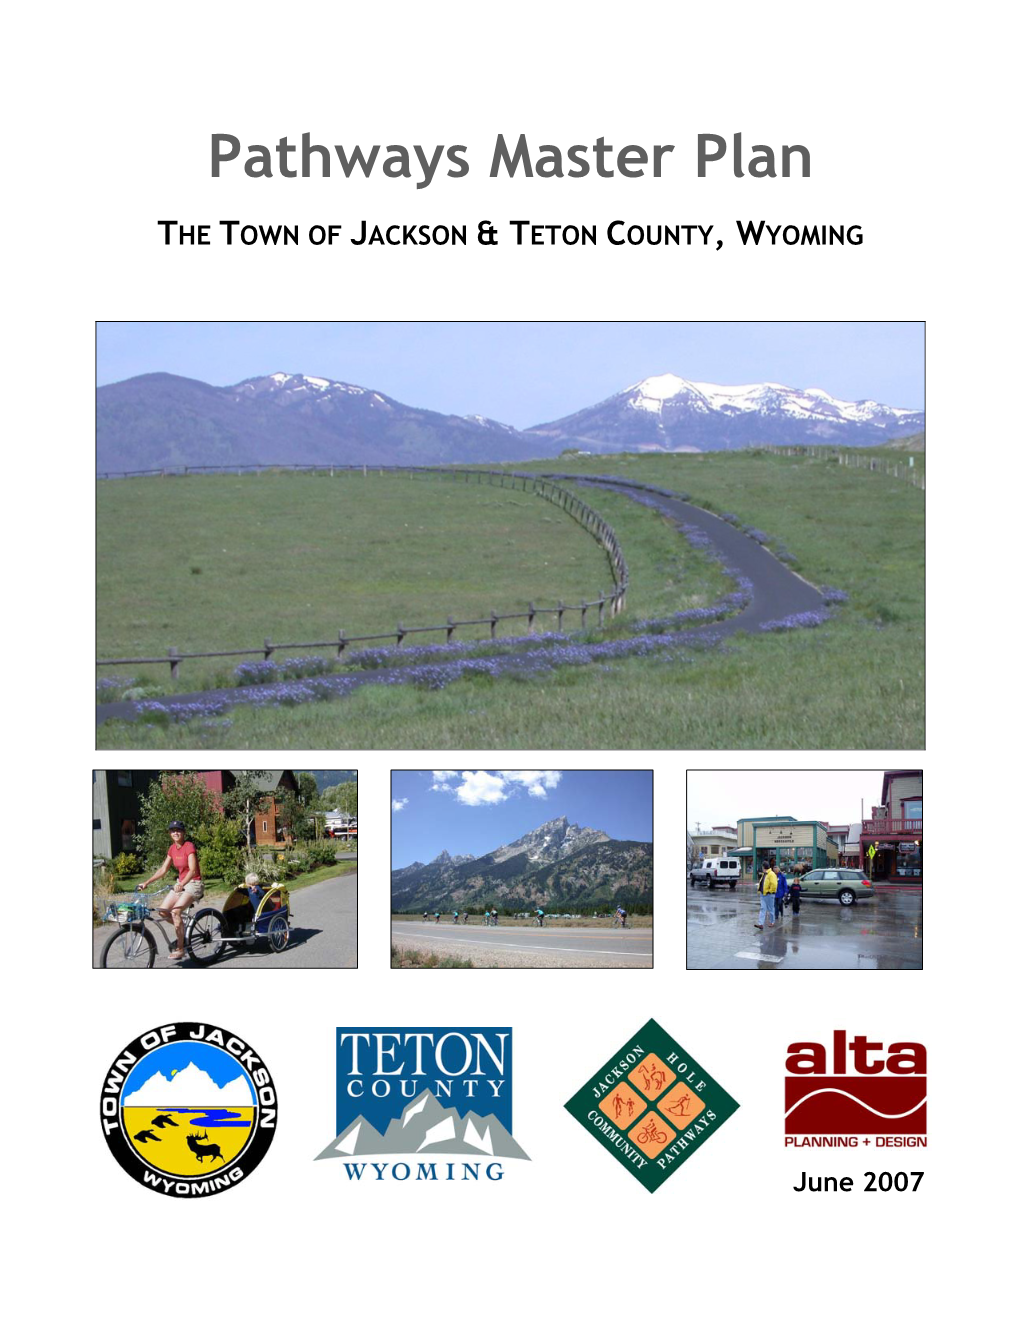 The Jackson/Teton County Pathways Master Plan